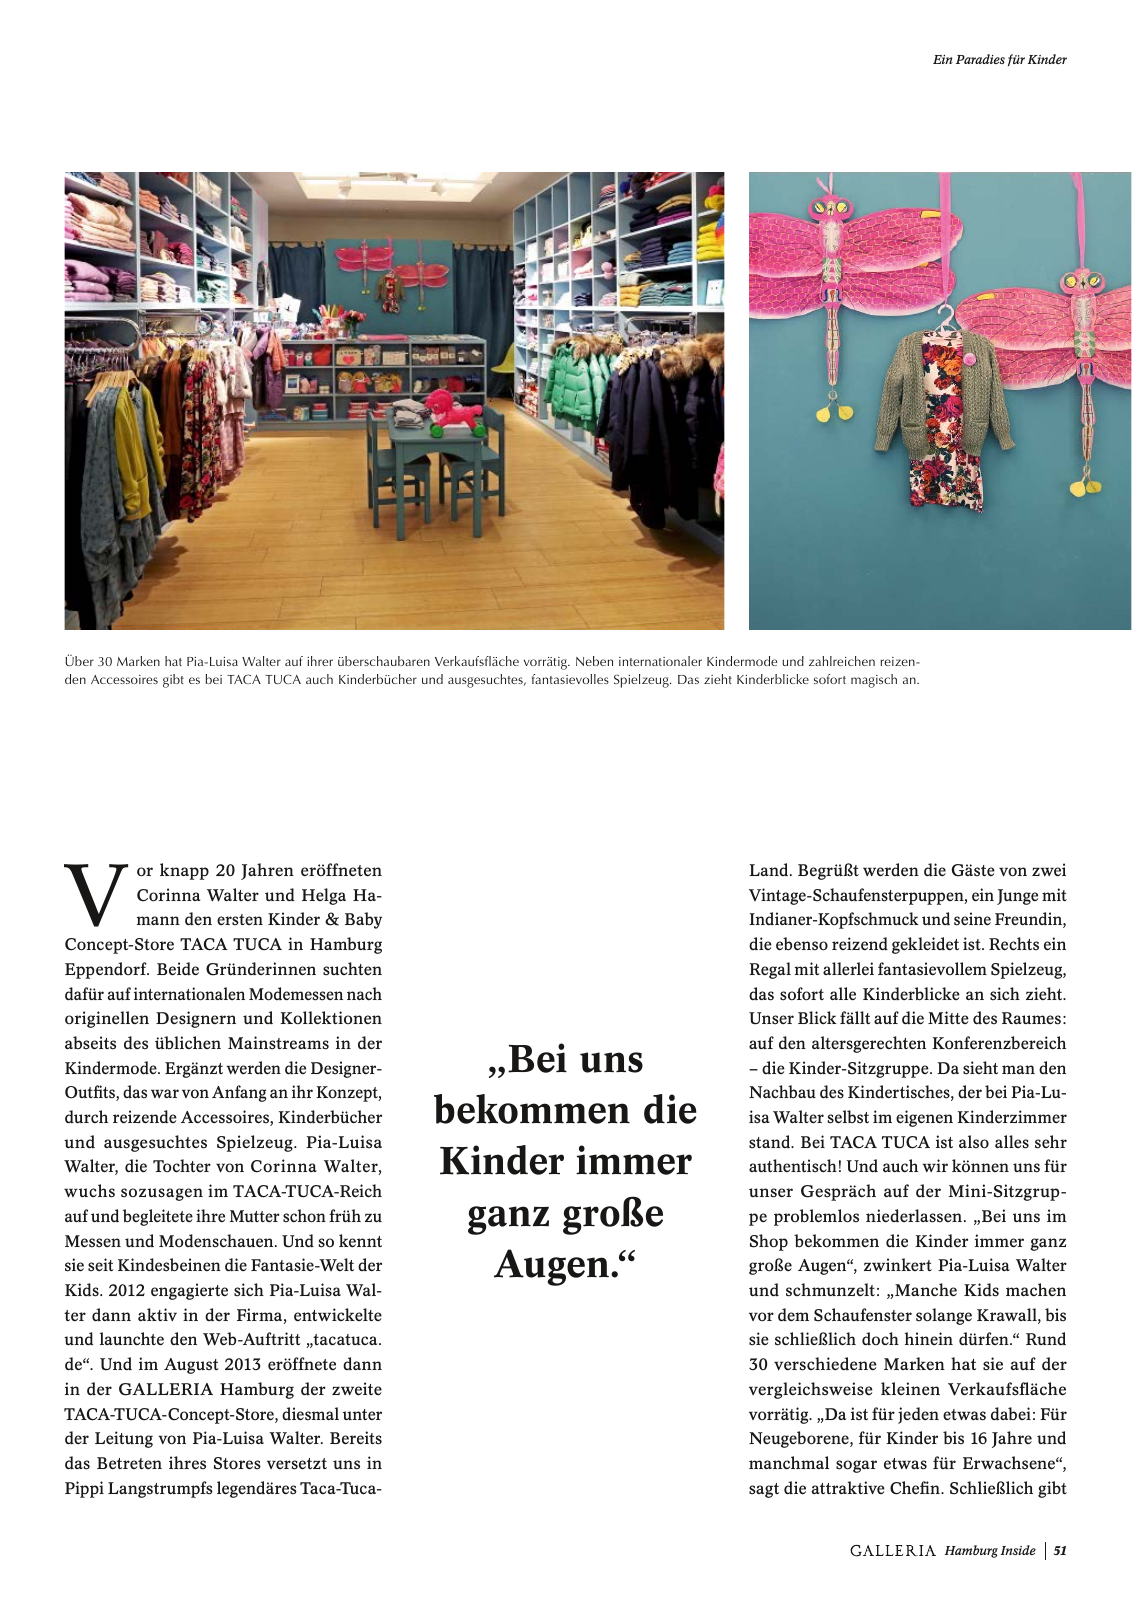 Vorschau GALLERIA Magazin Hamburg Inside 1 Seite 51